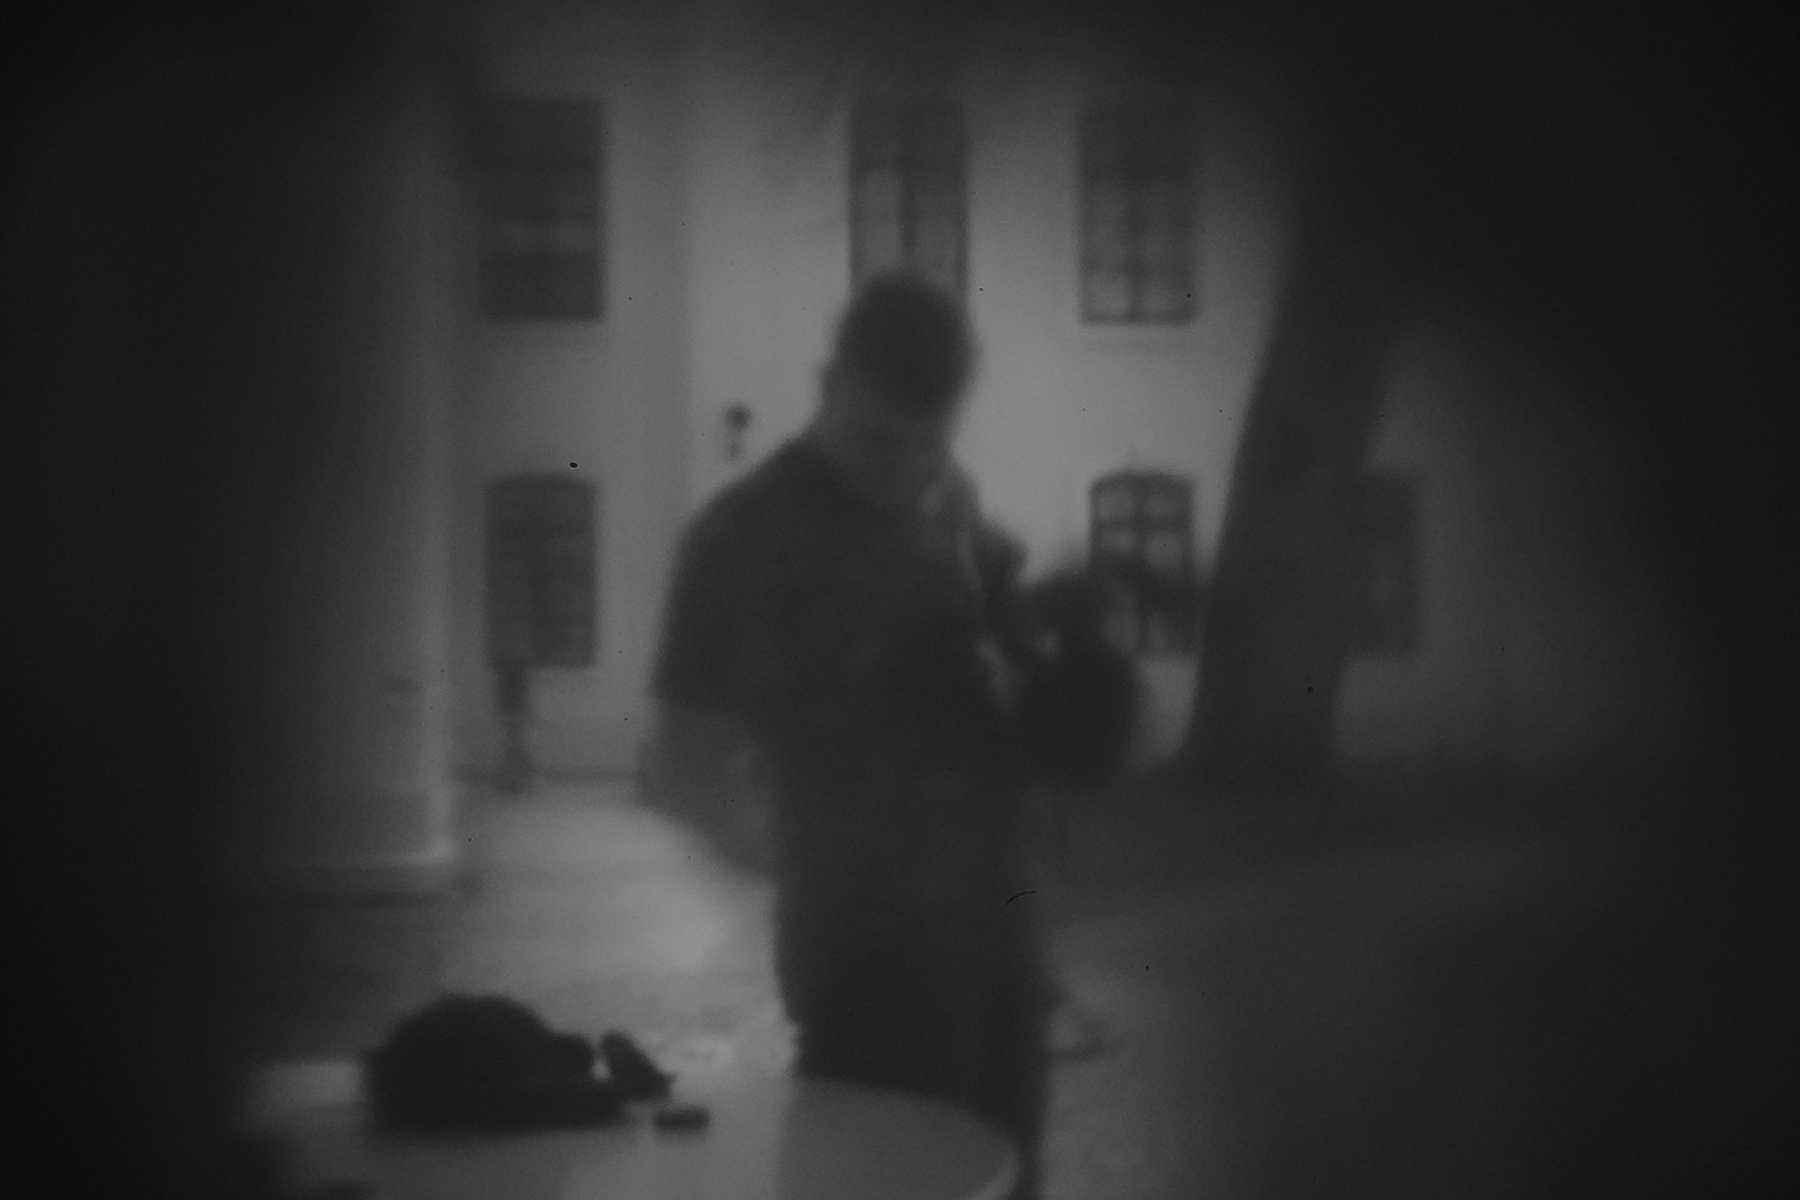 Postać młodego mężczyzny stojącego przy stoliku. W tle fragment drzewa i budynku. Fotografia wykonana techniką camera obscura, czarno-biała, lekko rozmyta, zaciemniona na rogach.